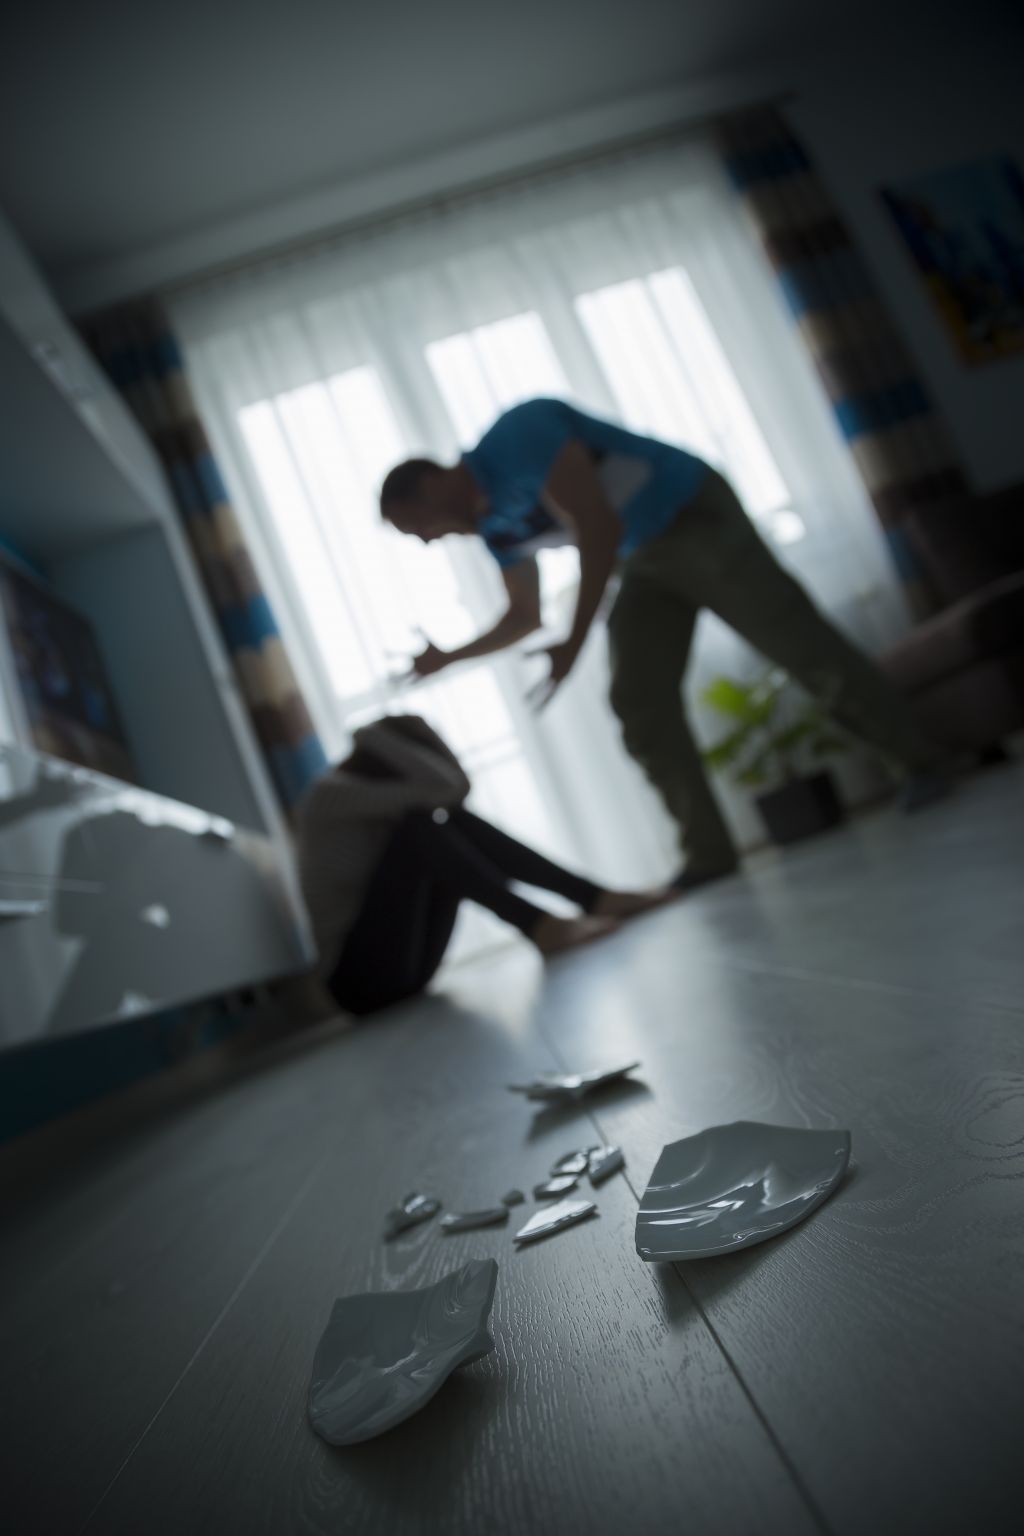 V Lendavi prišlo do nasilja v družini